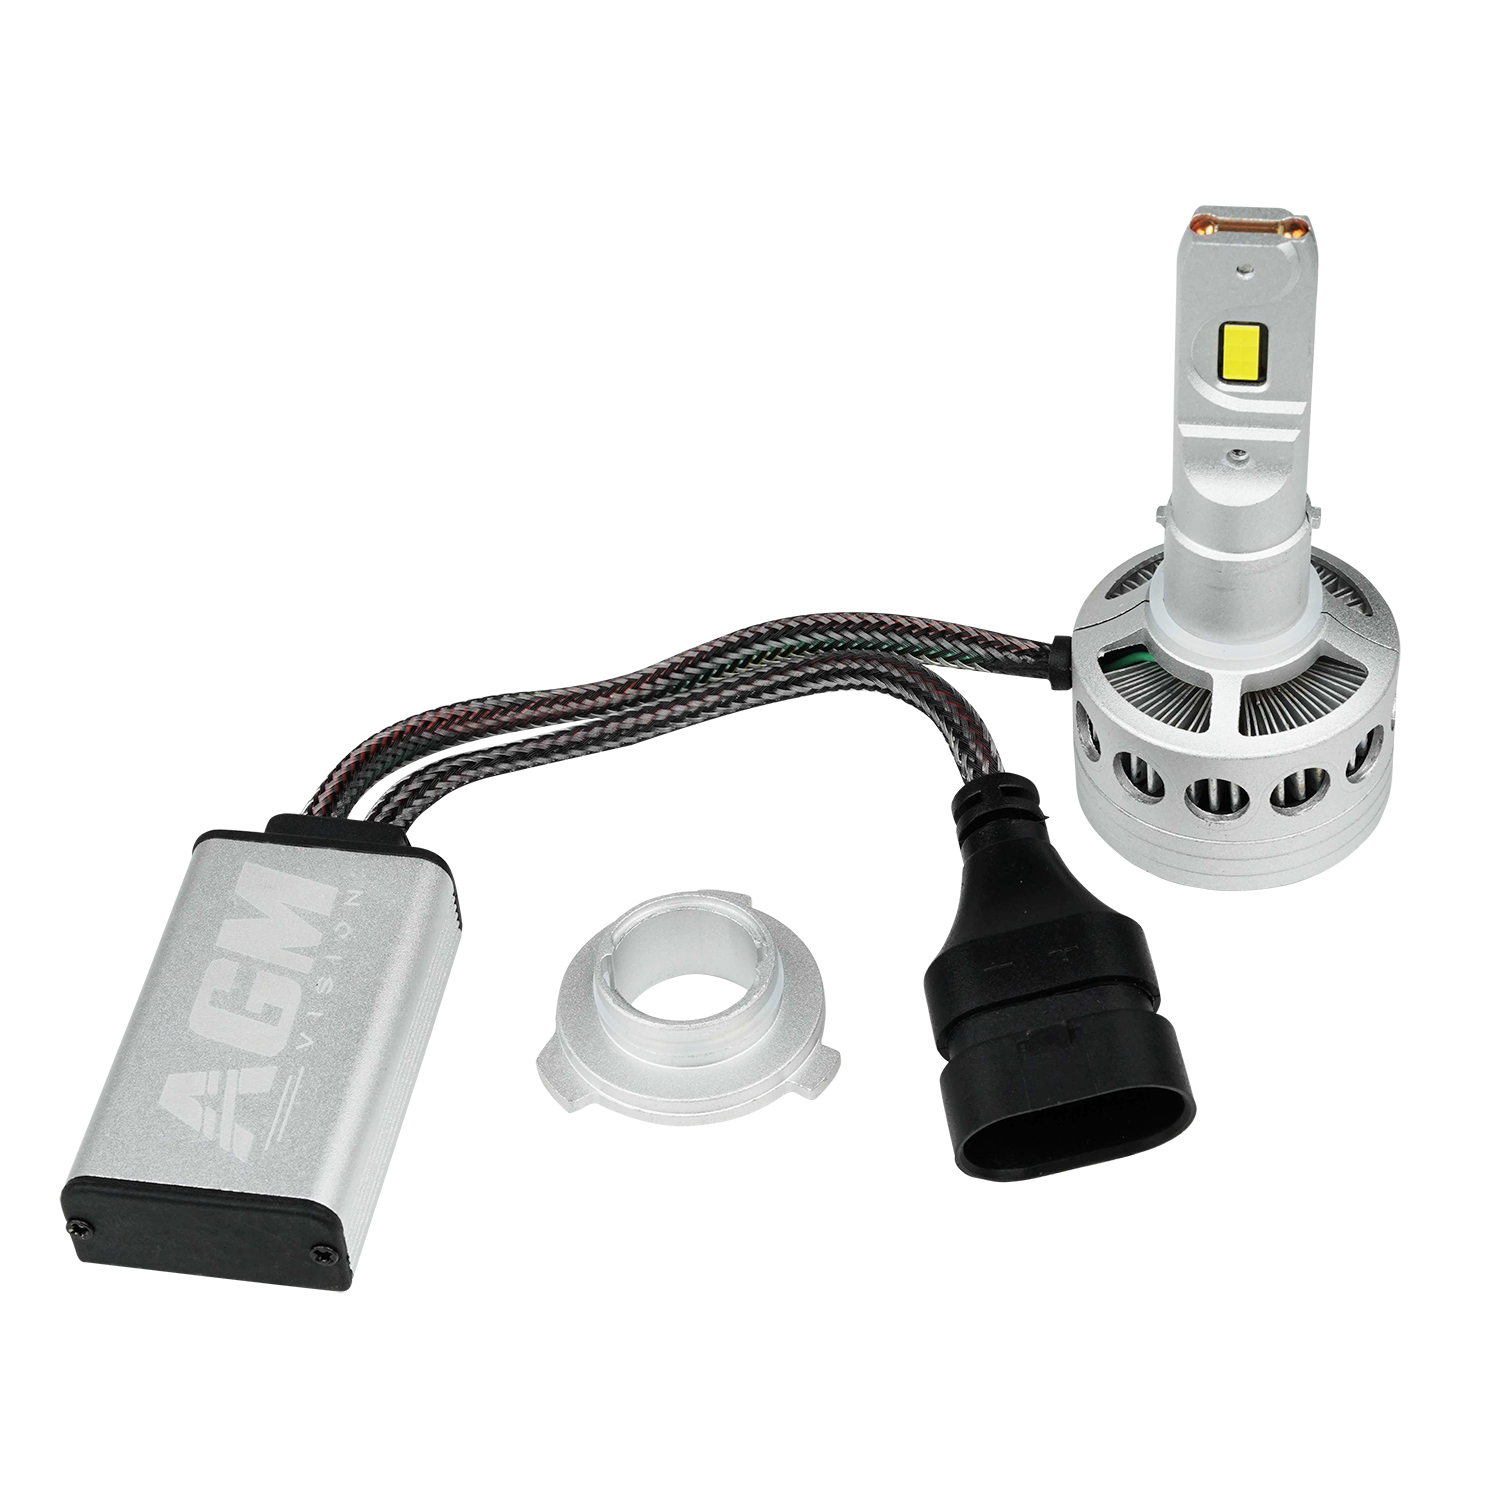 9005) - Ampoule LED HB3 6 LEDS HAUTE PUISSANCE BLANC - AUTOLED ®